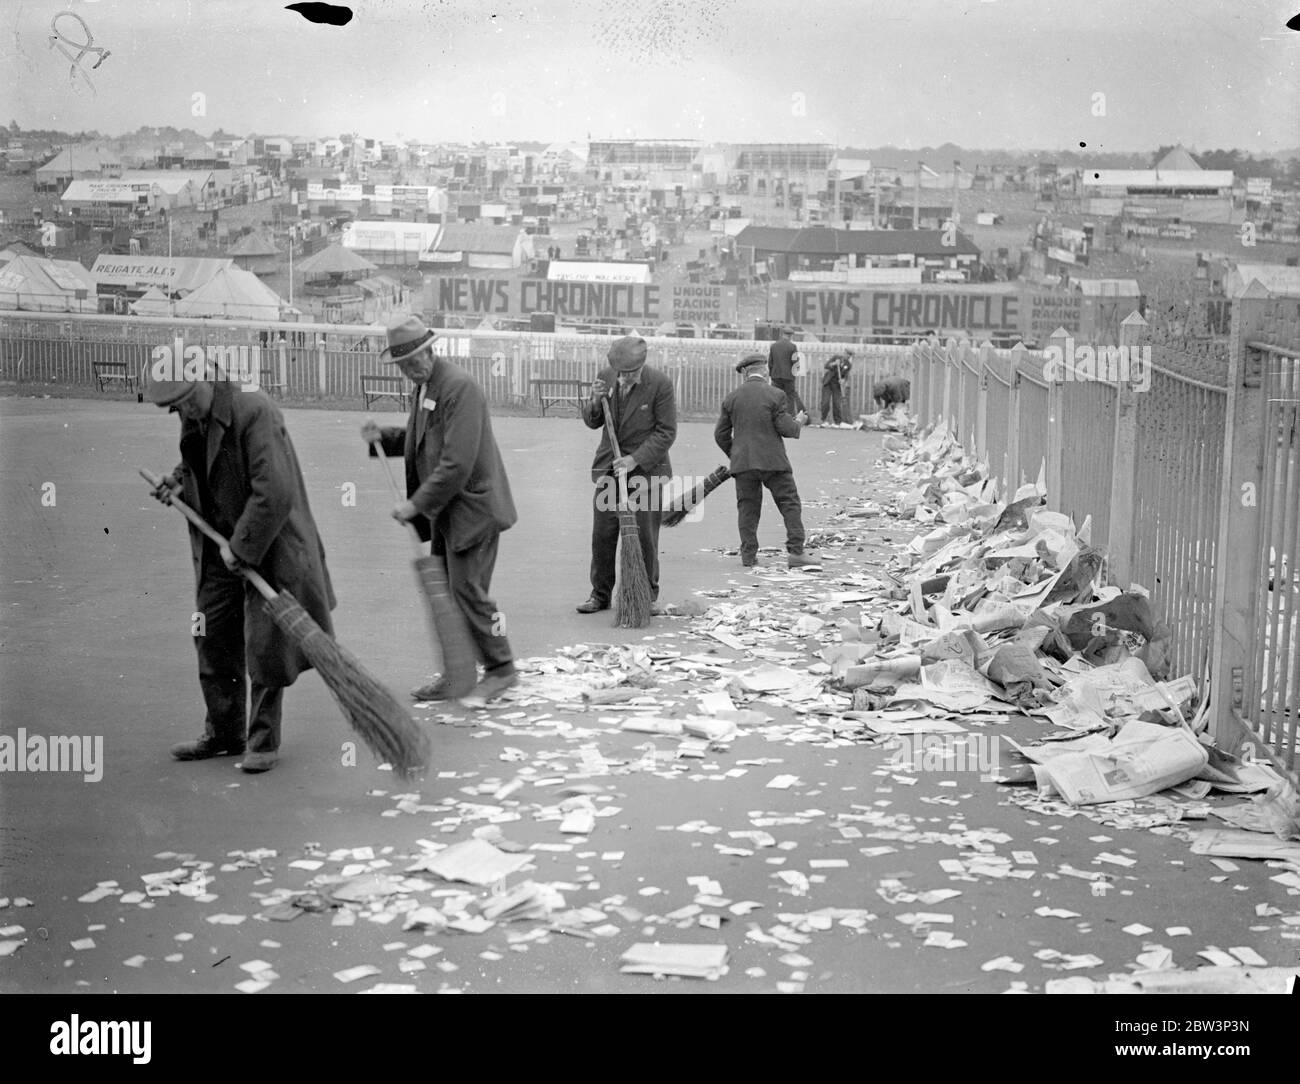 Pulizia di Epsom Downs dopo le folle di Derby . Un esercito di pulitori discese su Epsom Downs per rimuovere le tonnellate di rifiuti di esso lasciati dietro dalle folle di Derby . Foto spettacoli , pulizia su Epsom Downs questa mattina ( Giovedi ) . 28 maggio 1936 Foto Stock